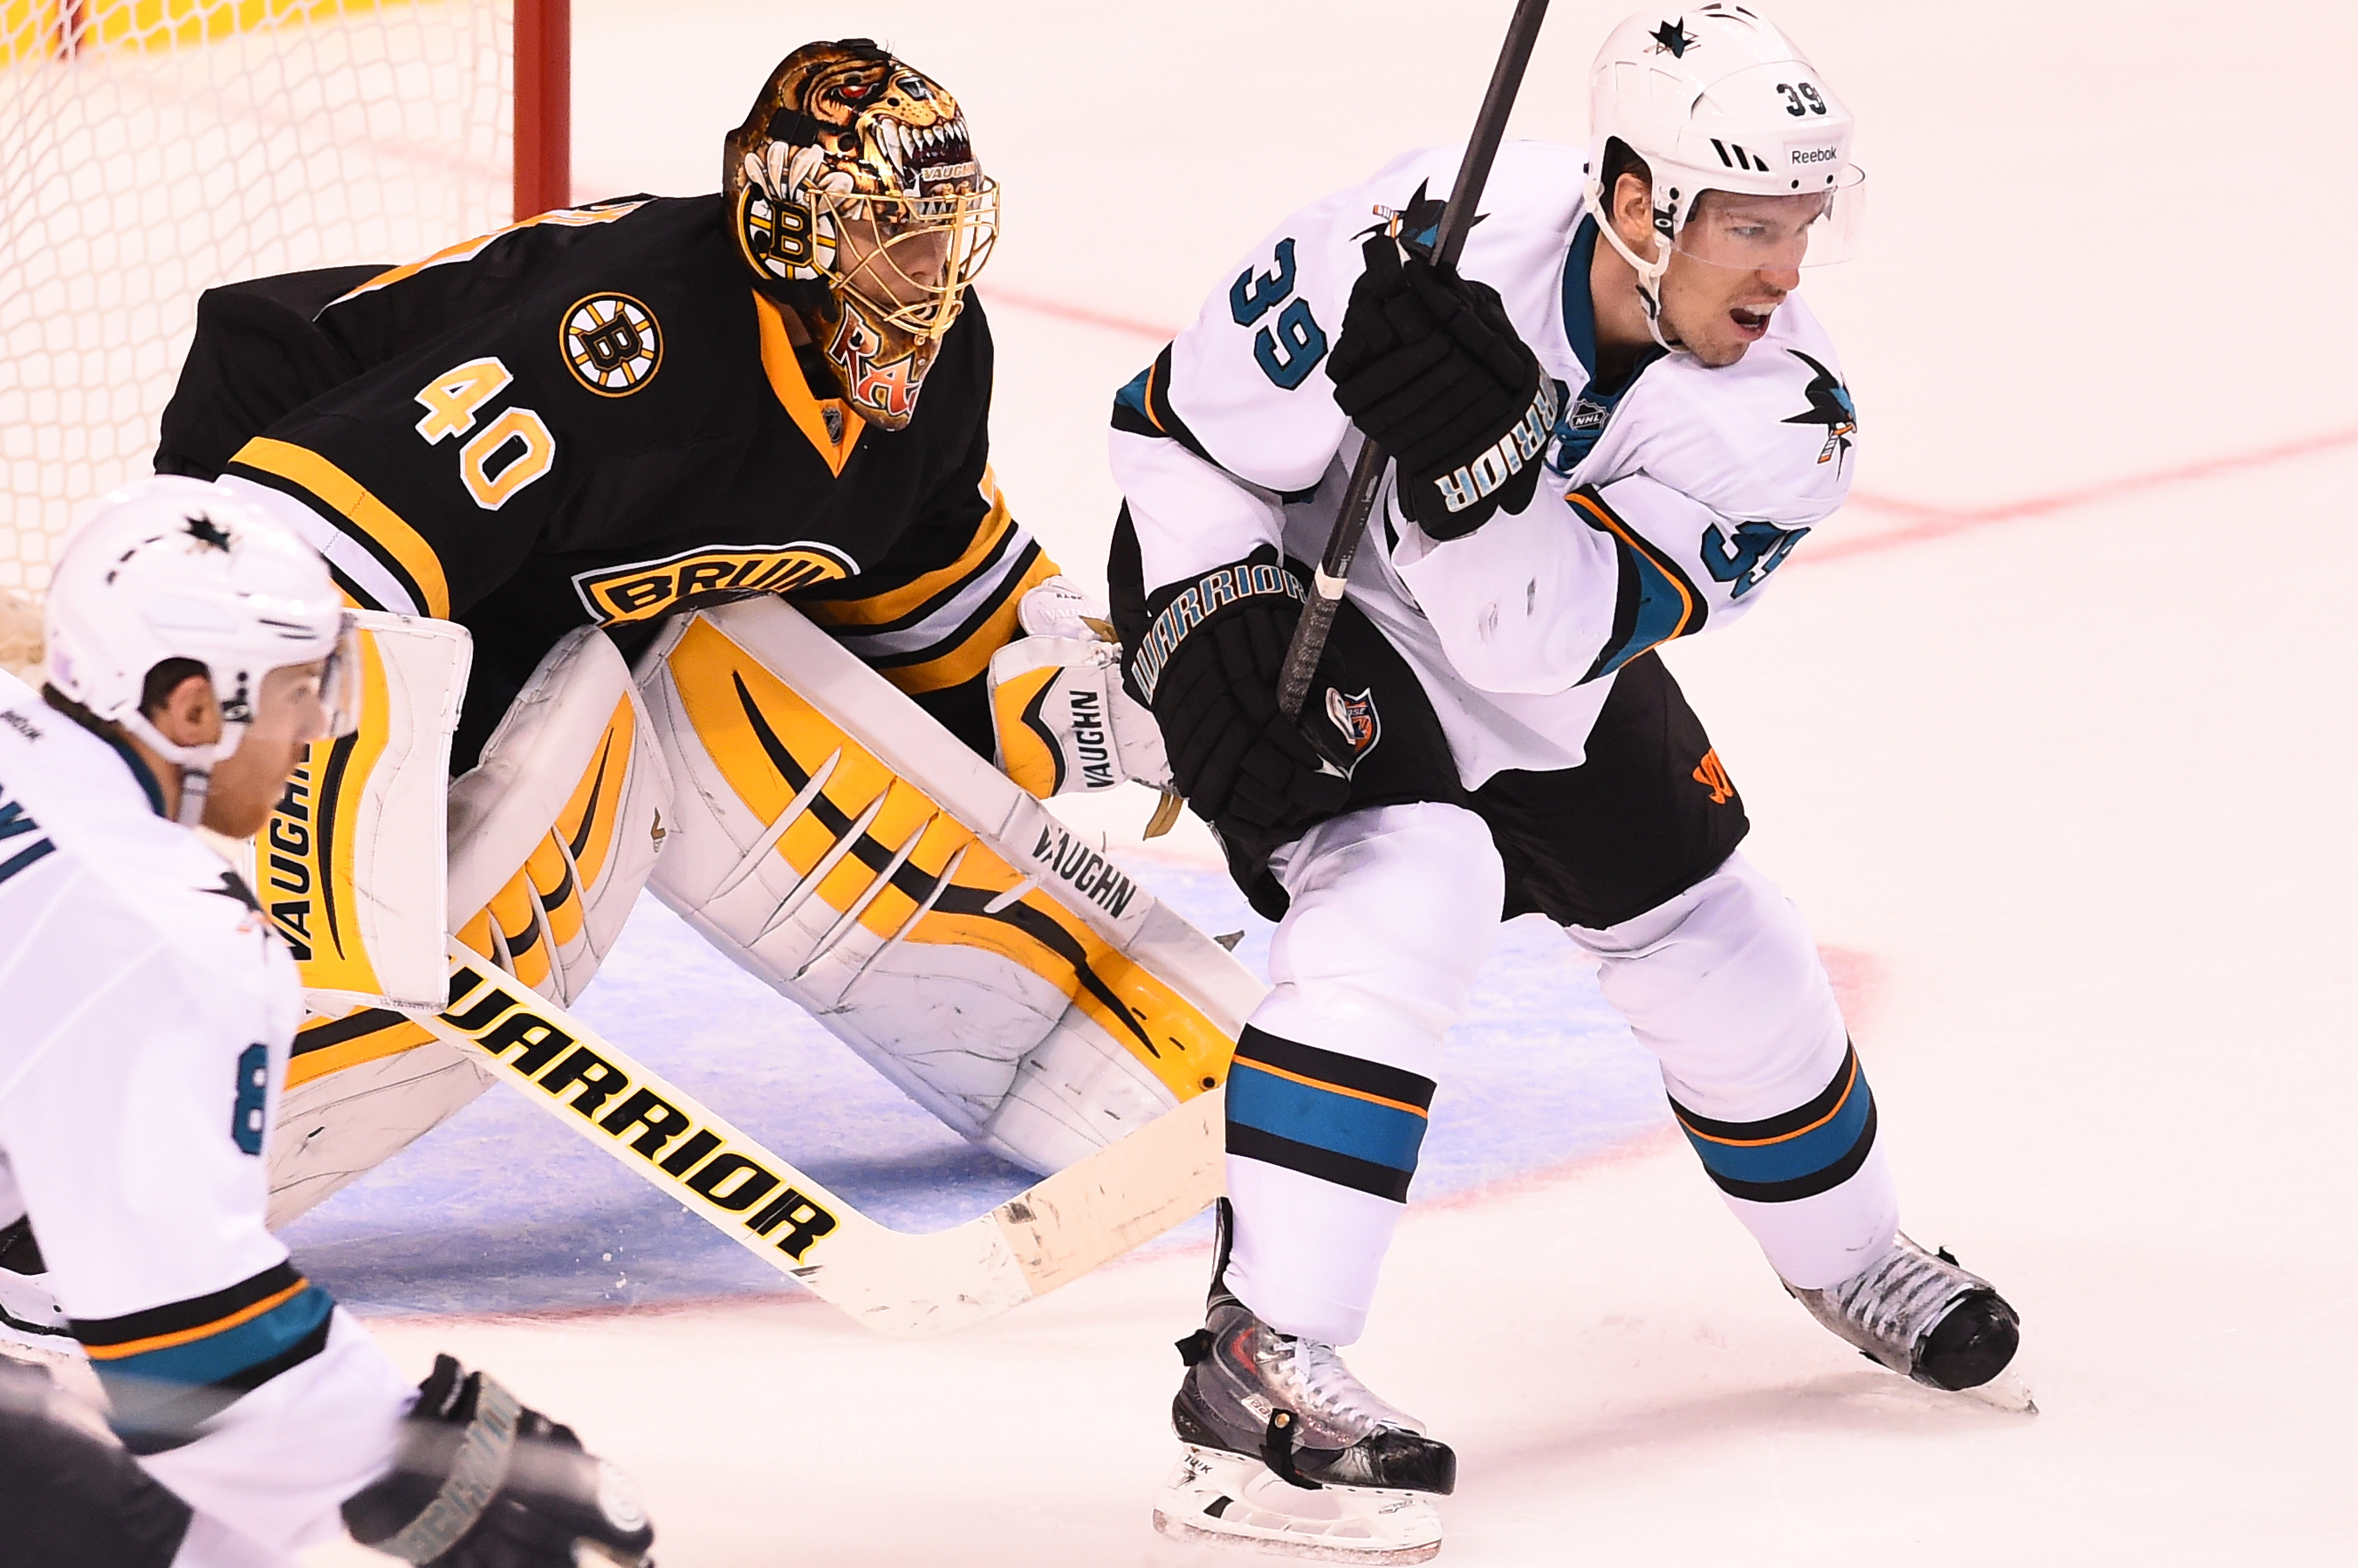 Despite Win, Boston Bruins Goalie Tuukka Rask Still Searching for